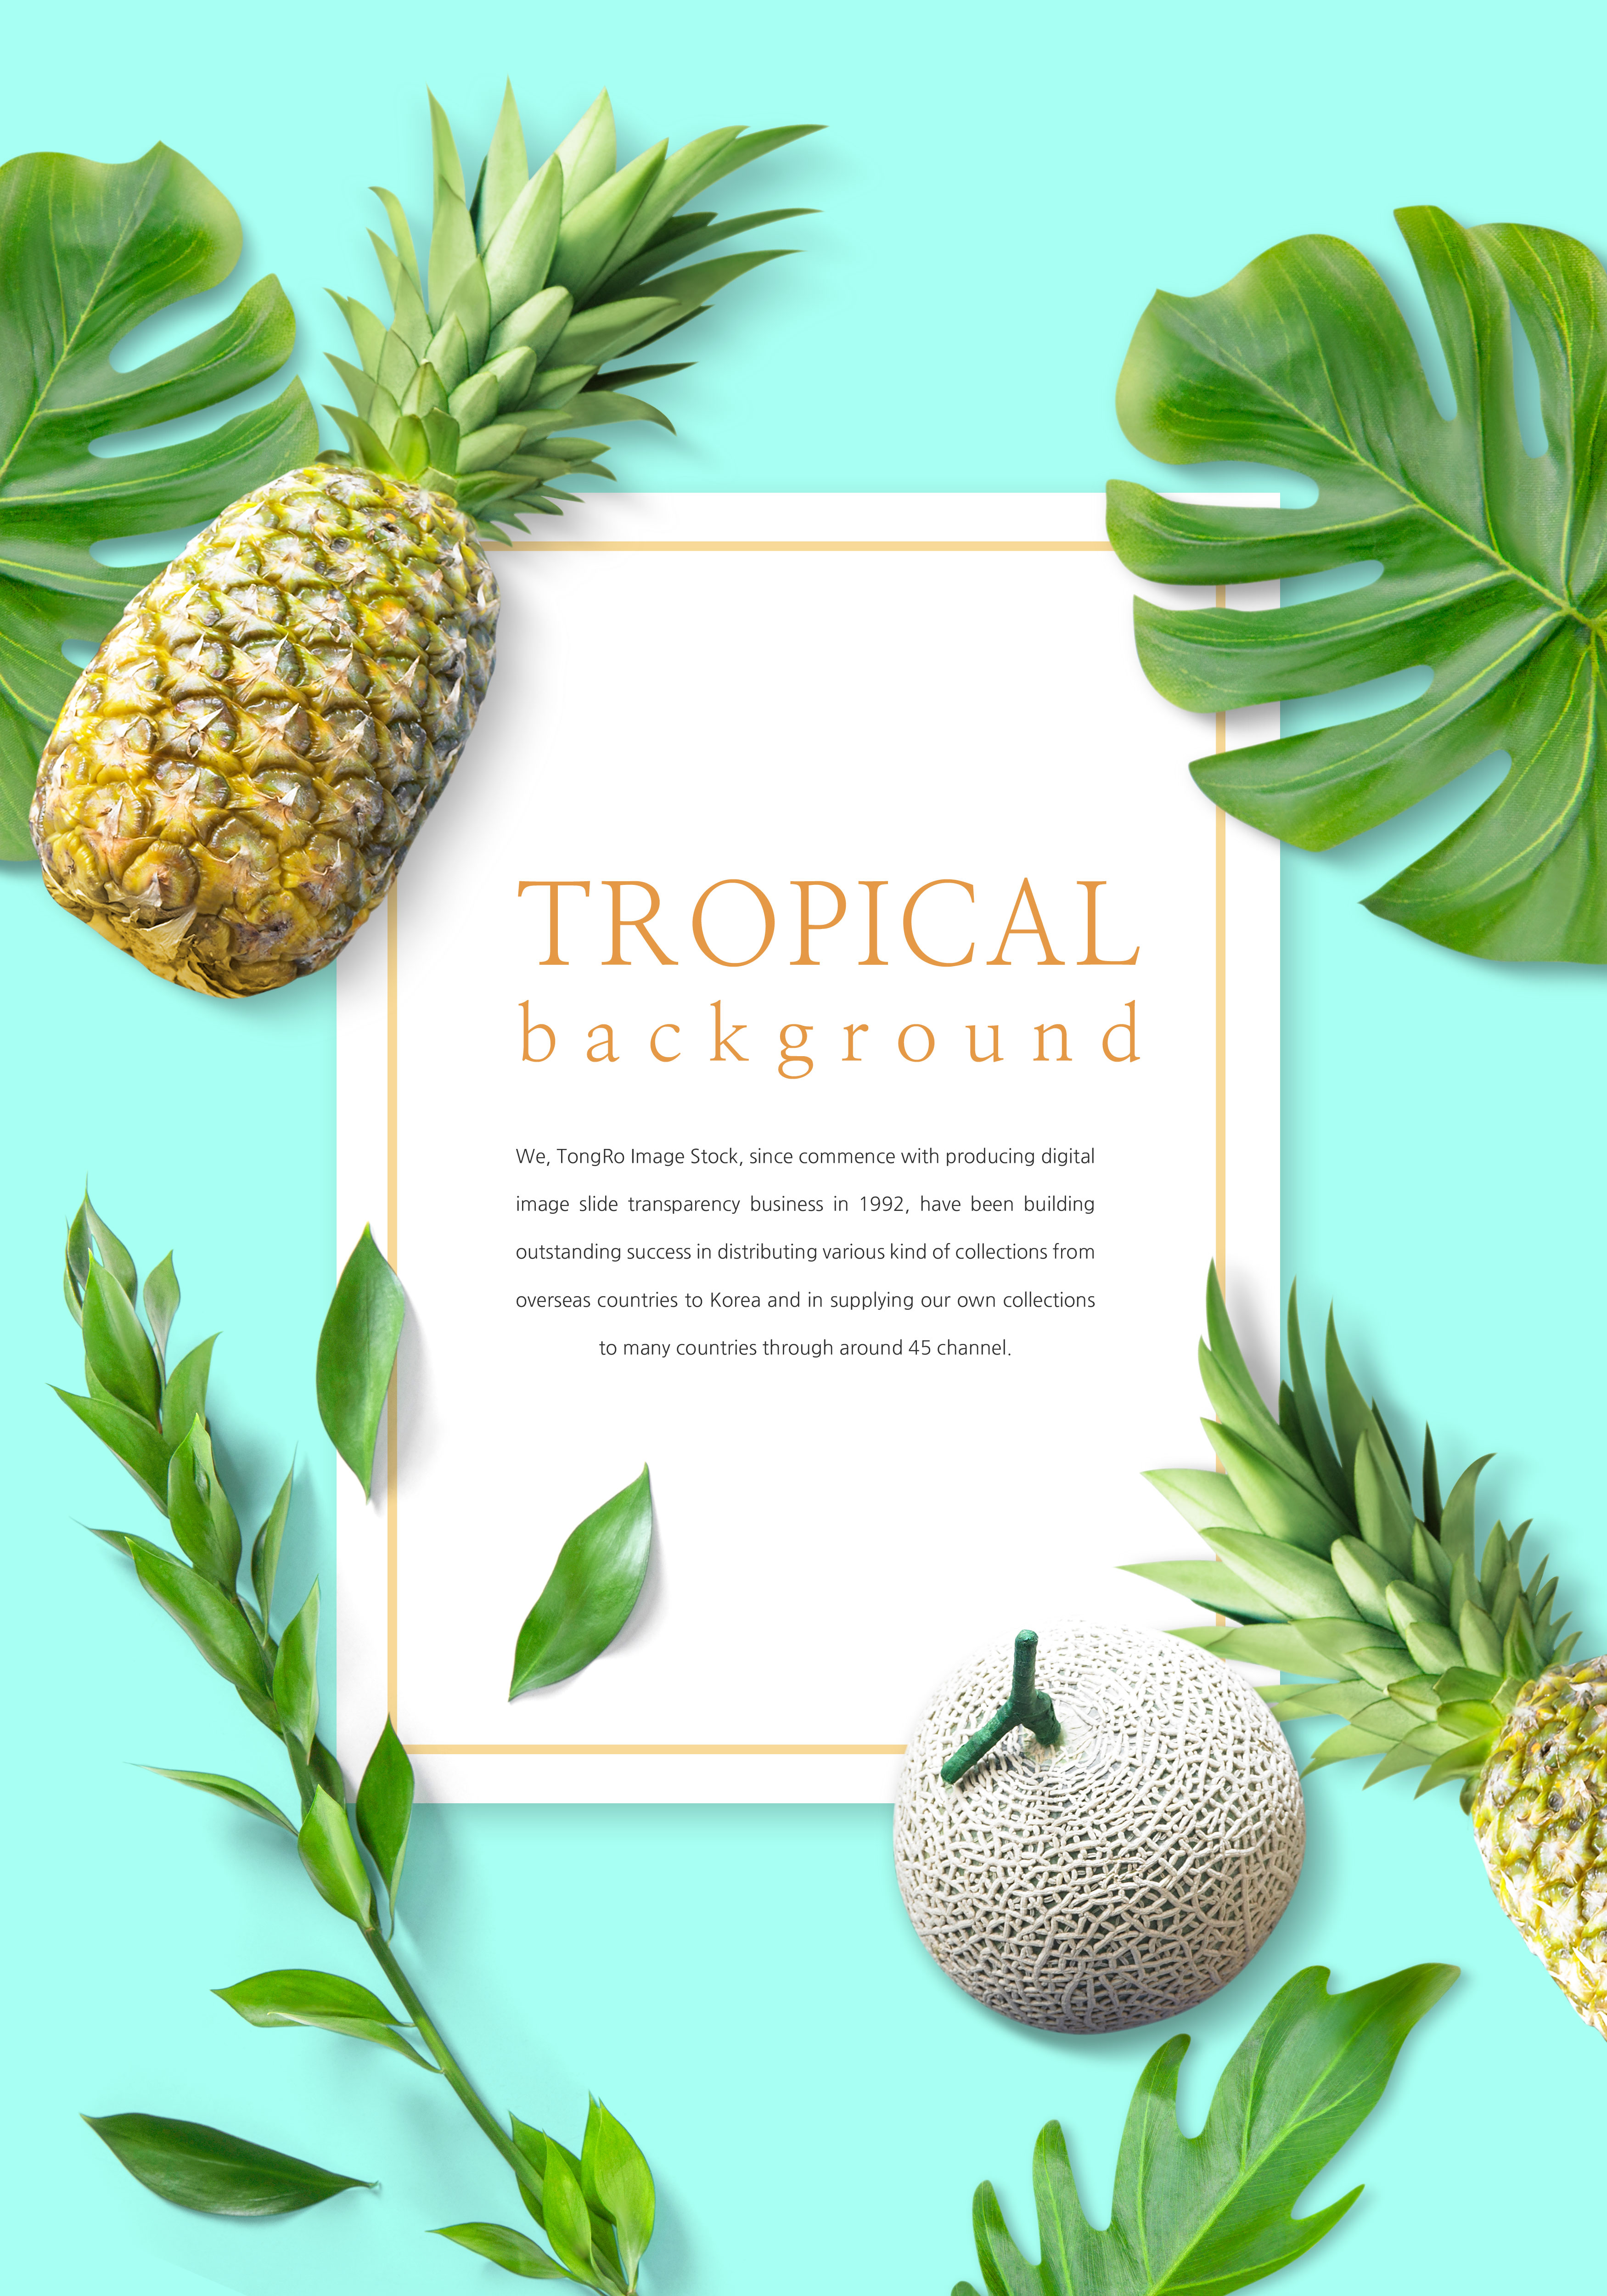 充满活力的热带水果背景图片设计素材插图